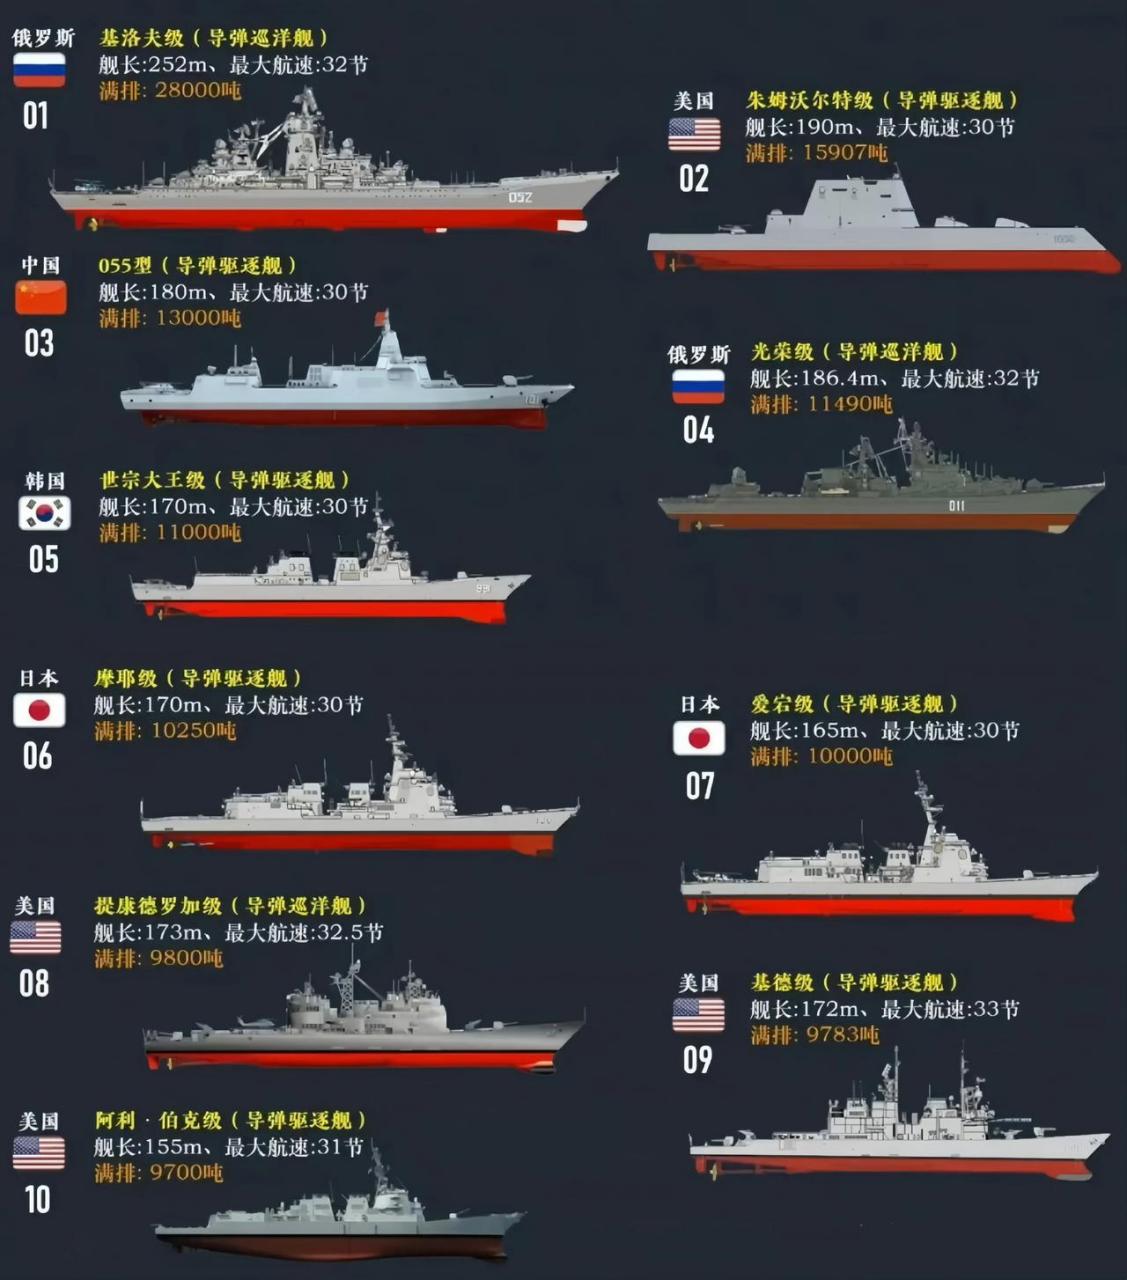 图1为网友制作的全球水面作战舰艇吨位排行榜单(除航母和两栖作战舰艇